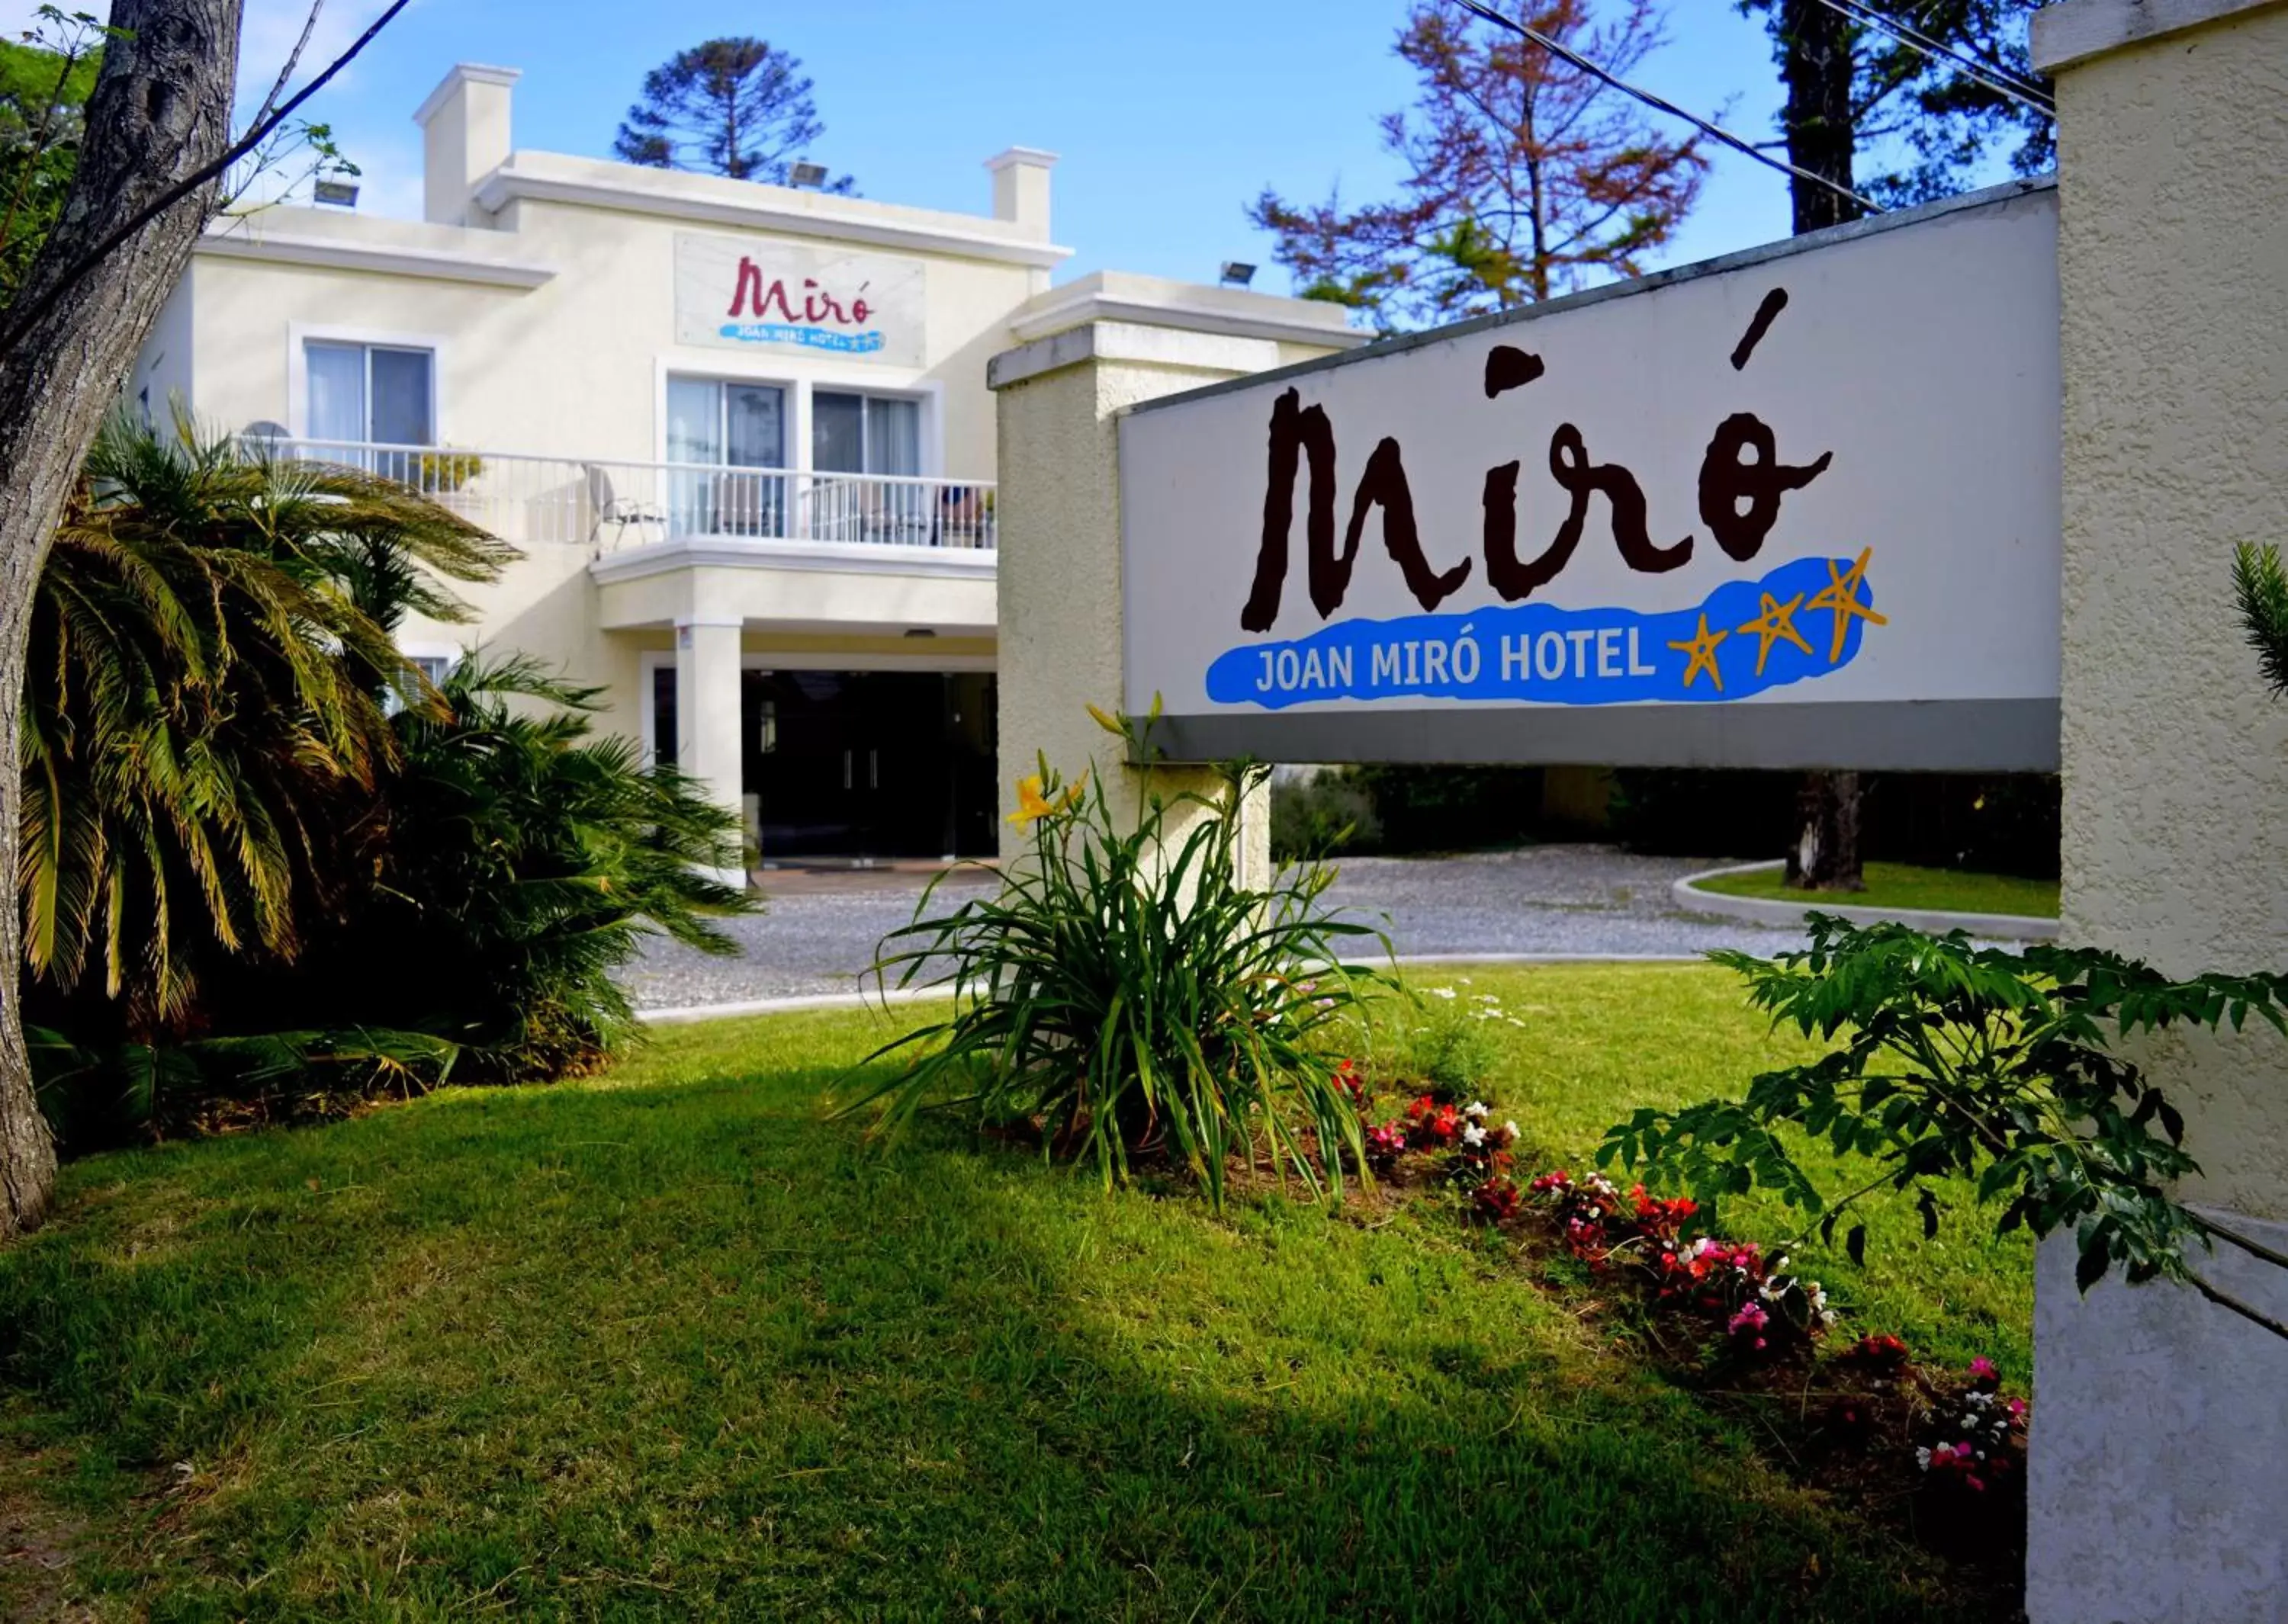 Facade/entrance, Property Building in Joan Miró Hotel